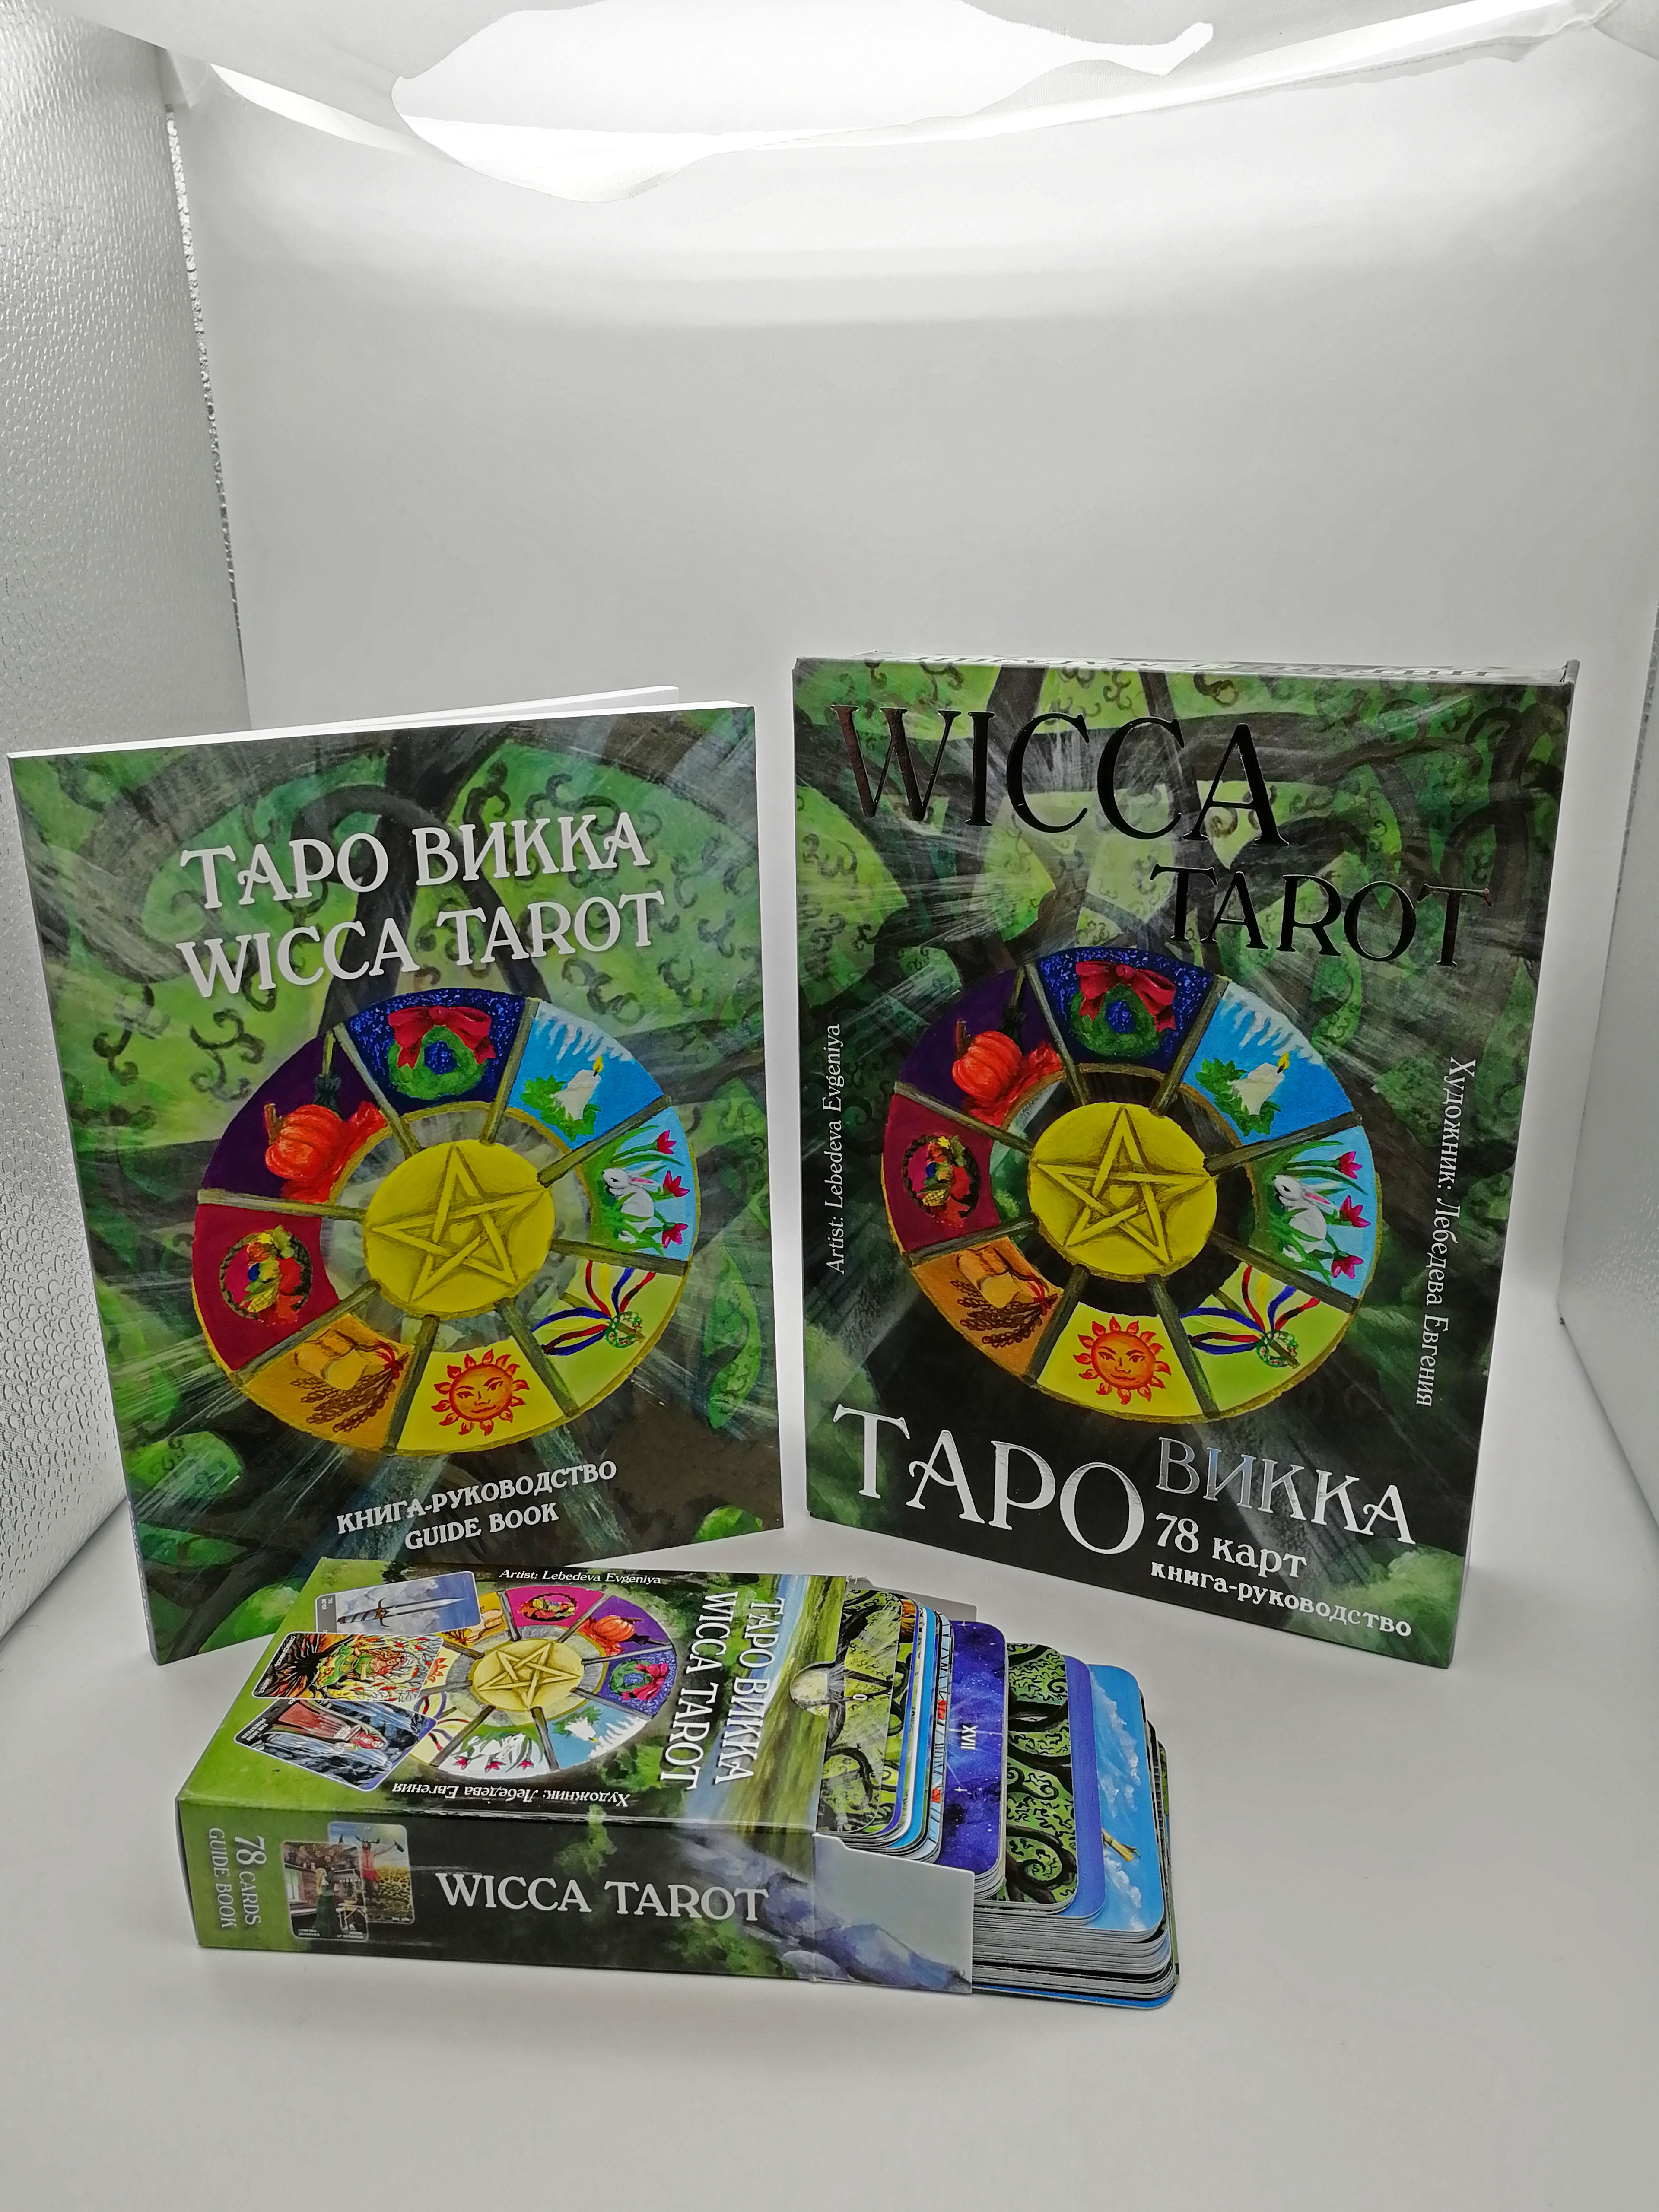 Гадальные карты Таро Викка Wicca Tarot колода с инструкцией книга руководство для гадания %% 